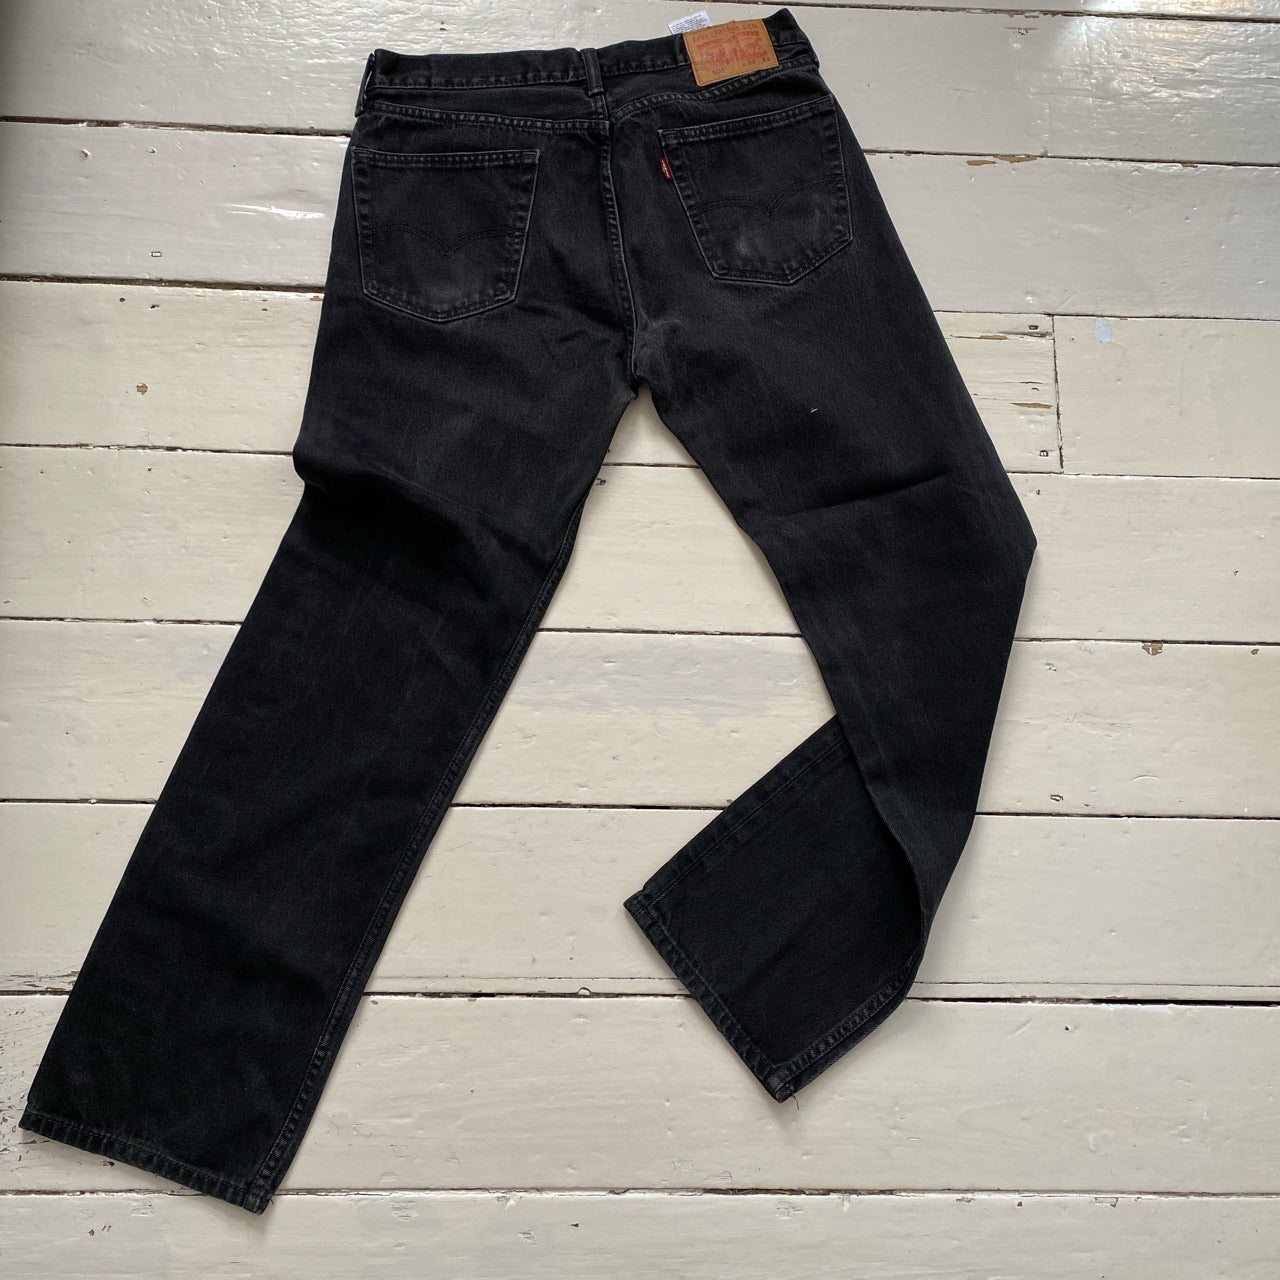 Levis 505 Black Jeans (34/31)